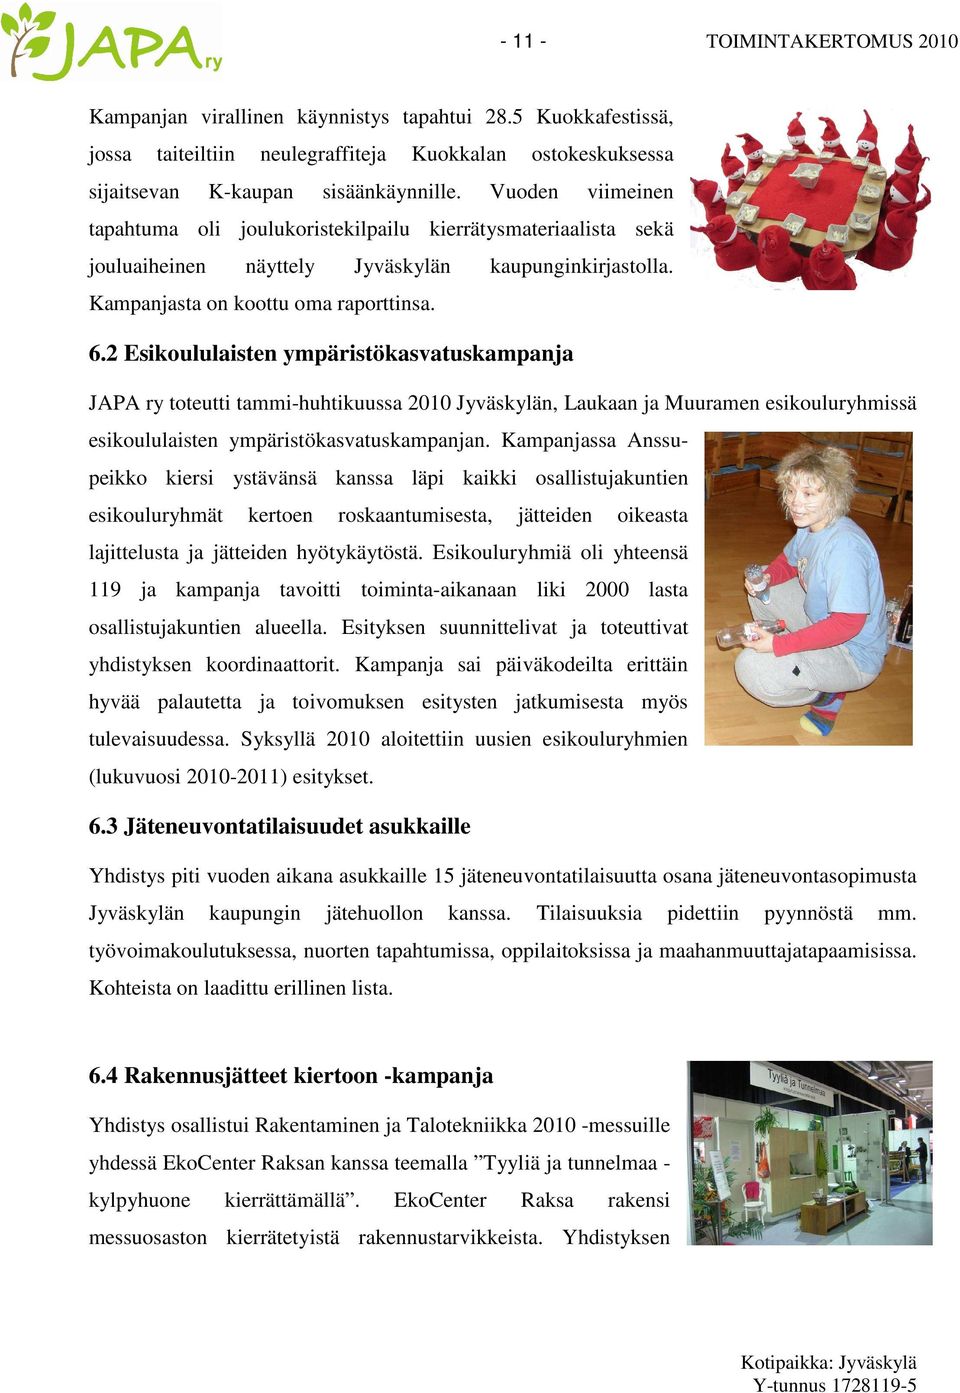 2 Esikoululaisten ympäristökasvatuskampanja JAPA ry toteutti tammi-huhtikuussa 2010 Jyväskylän, Laukaan ja Muuramen esikouluryhmissä esikoululaisten ympäristökasvatuskampanjan.